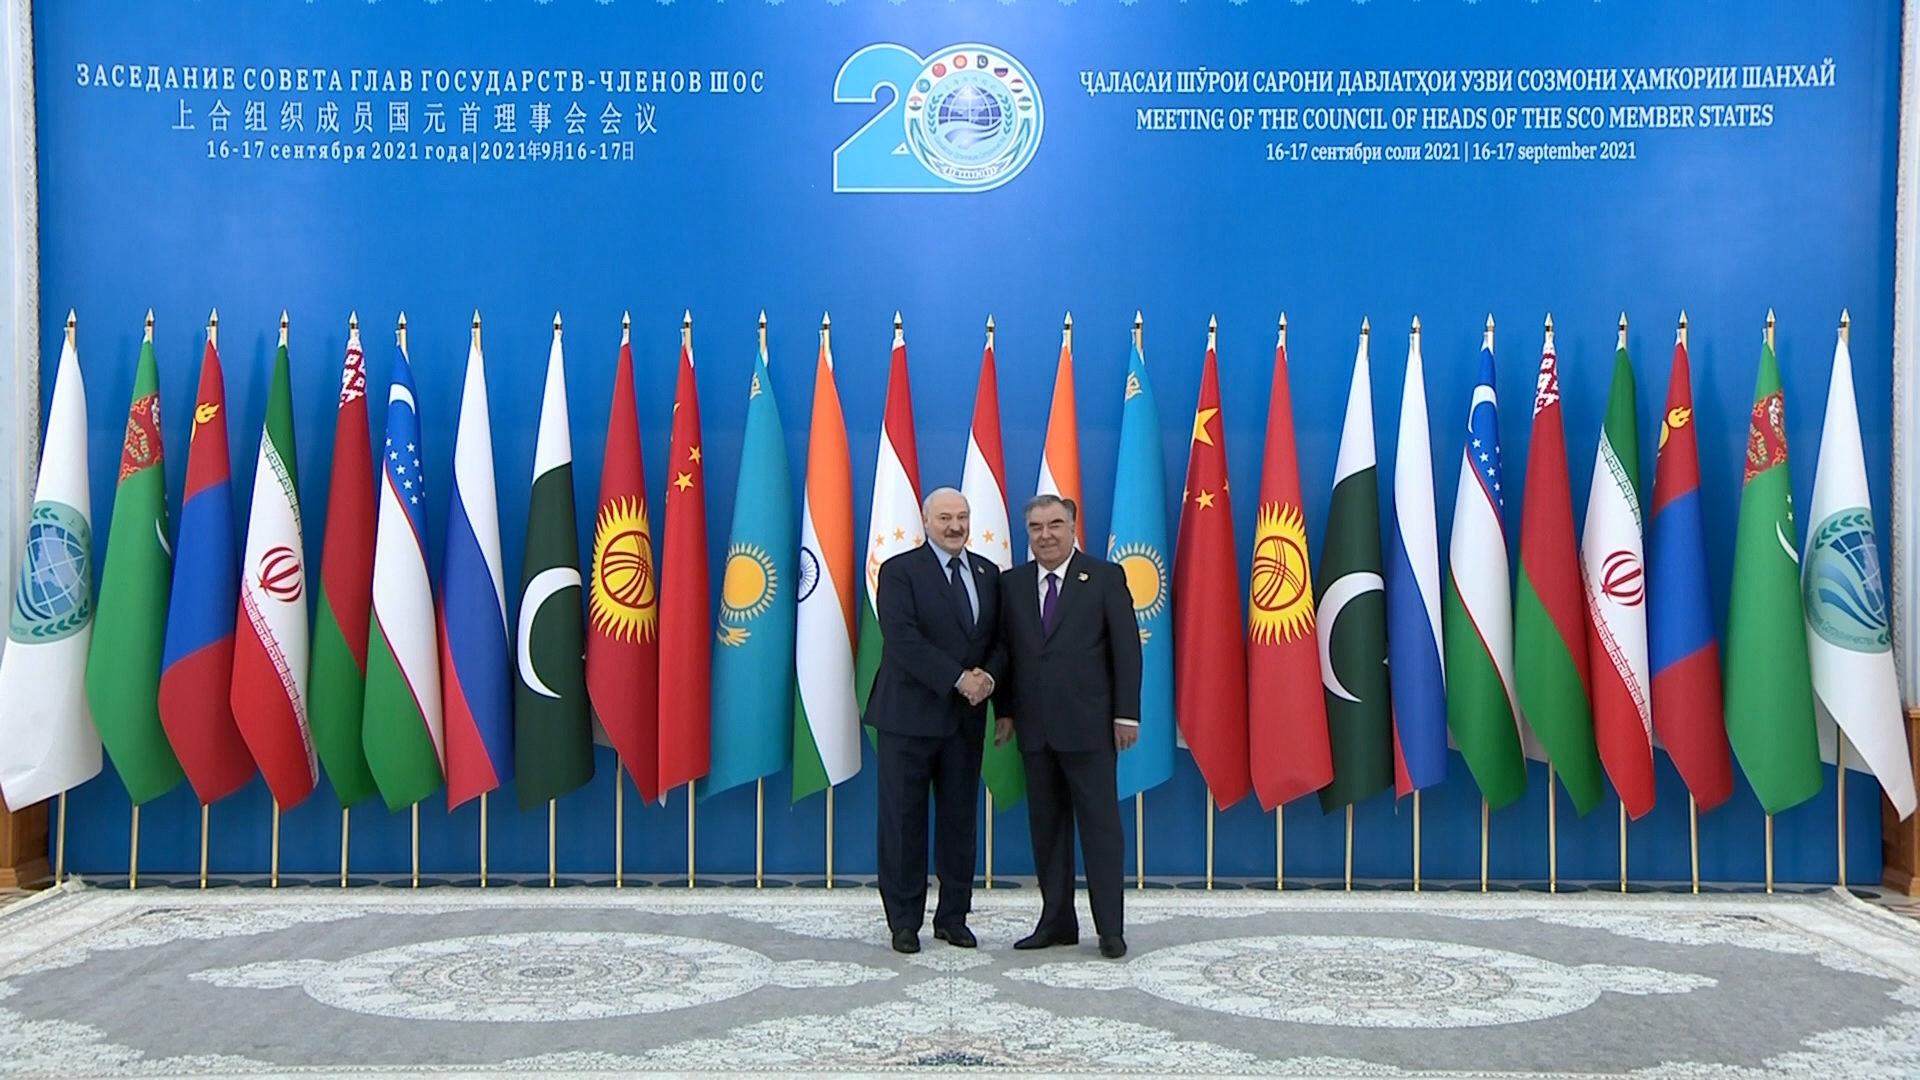 А. Лукашенко принимает участие в саммите ШОС